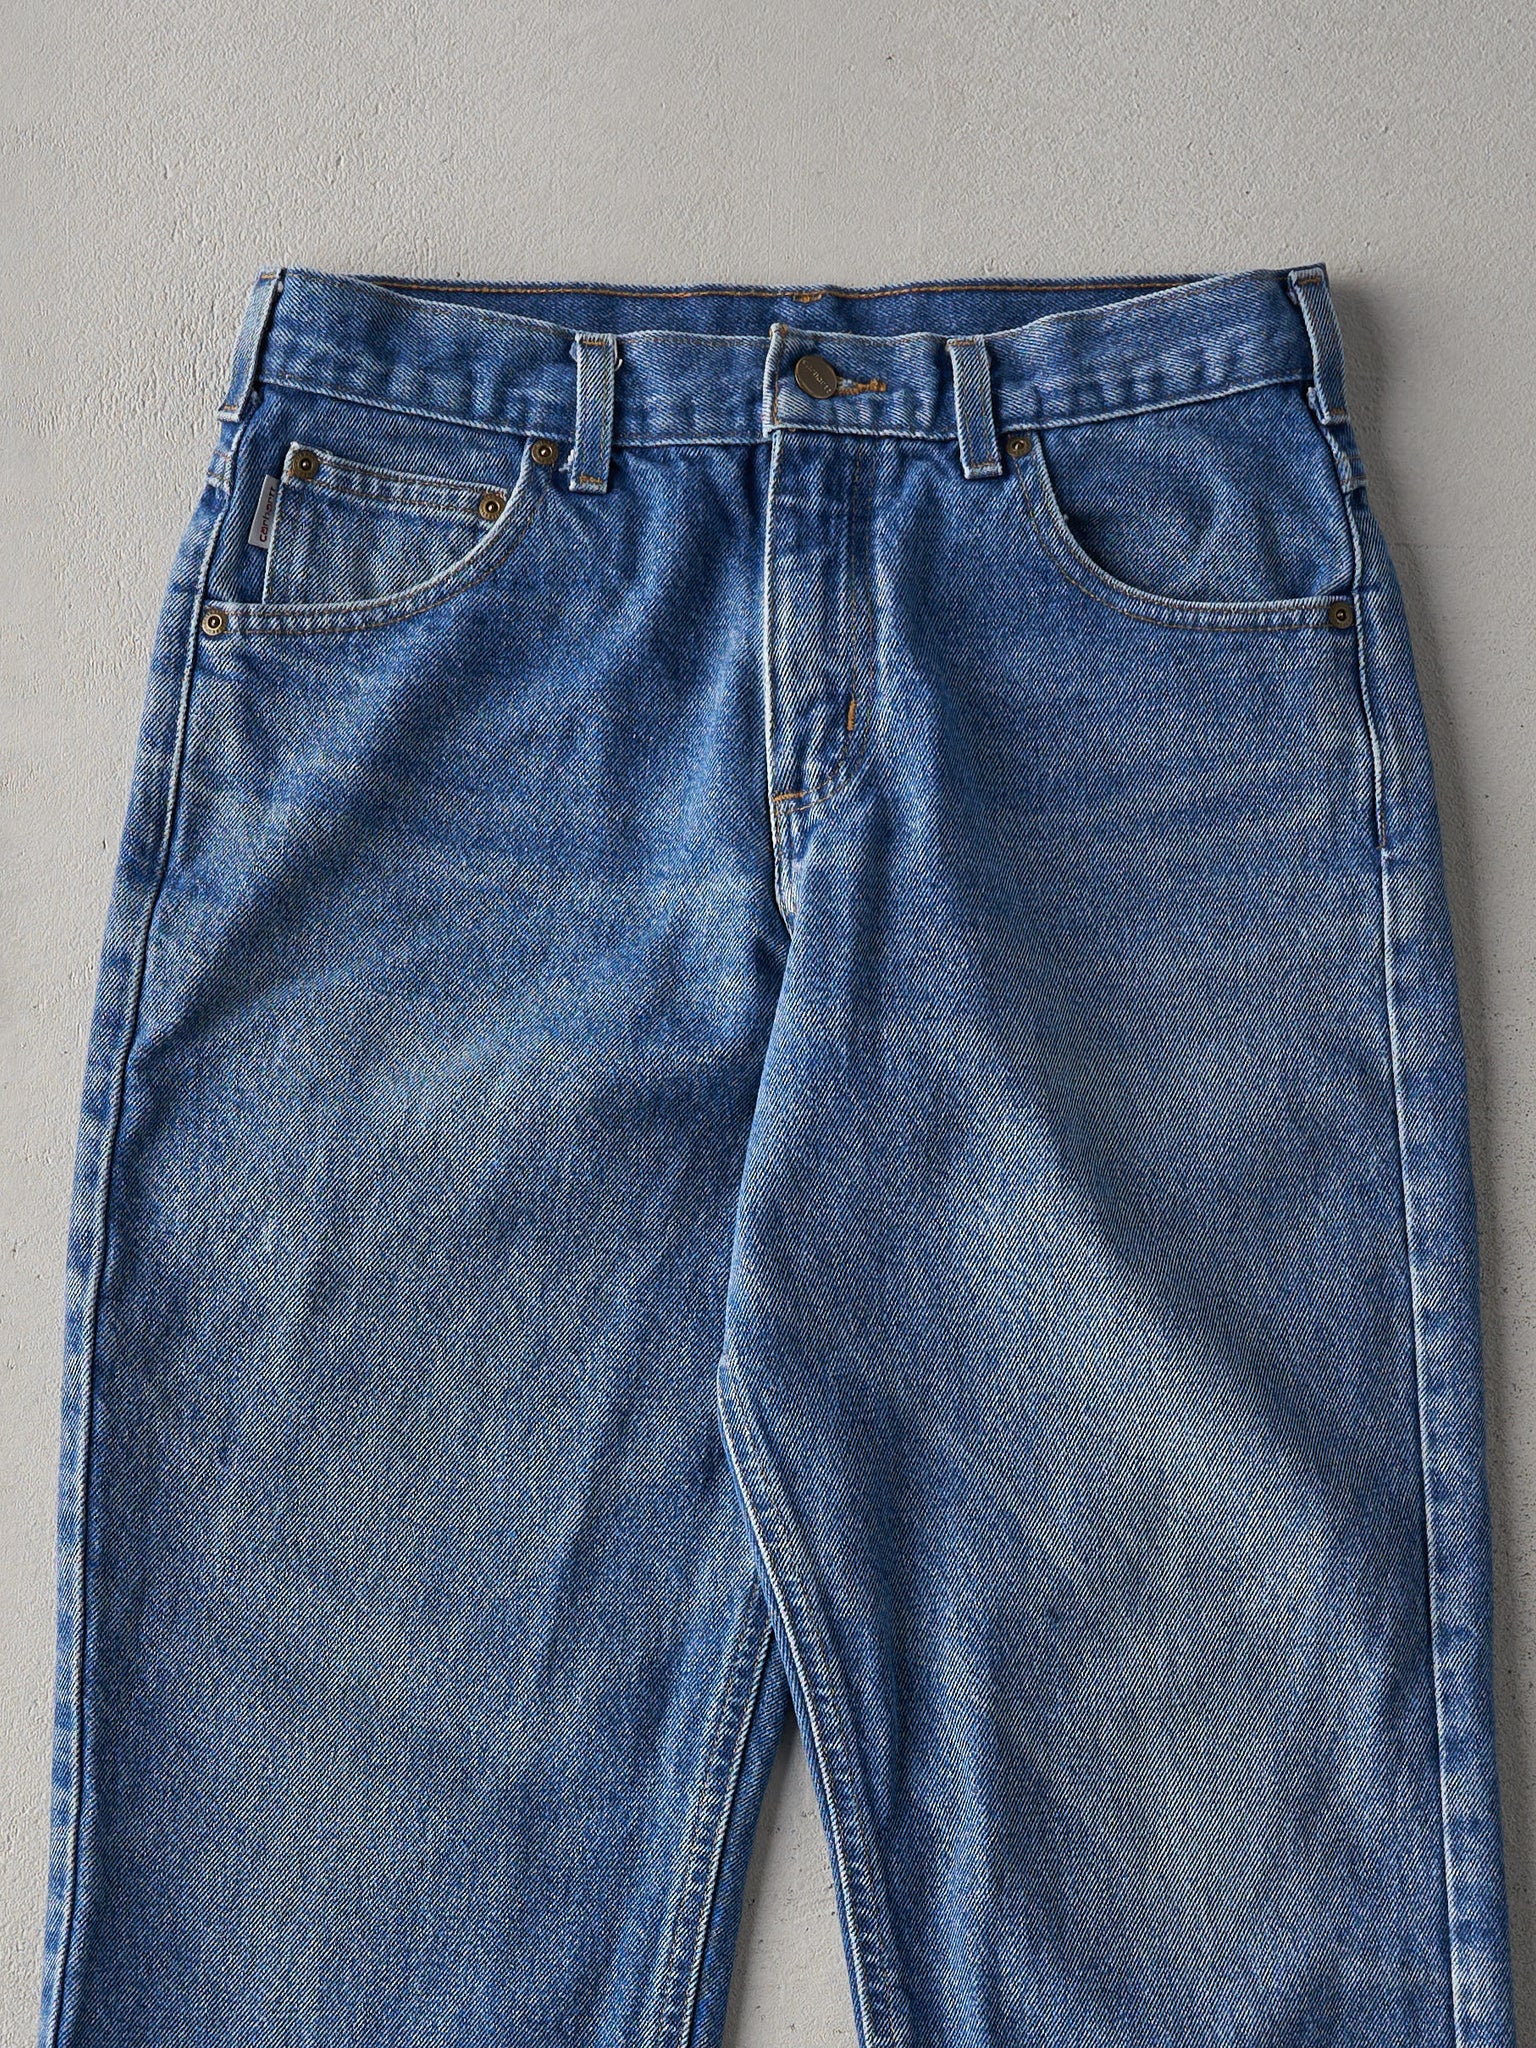 Vintage 90s Dark Wash Carhartt Jeans (31x29.5)